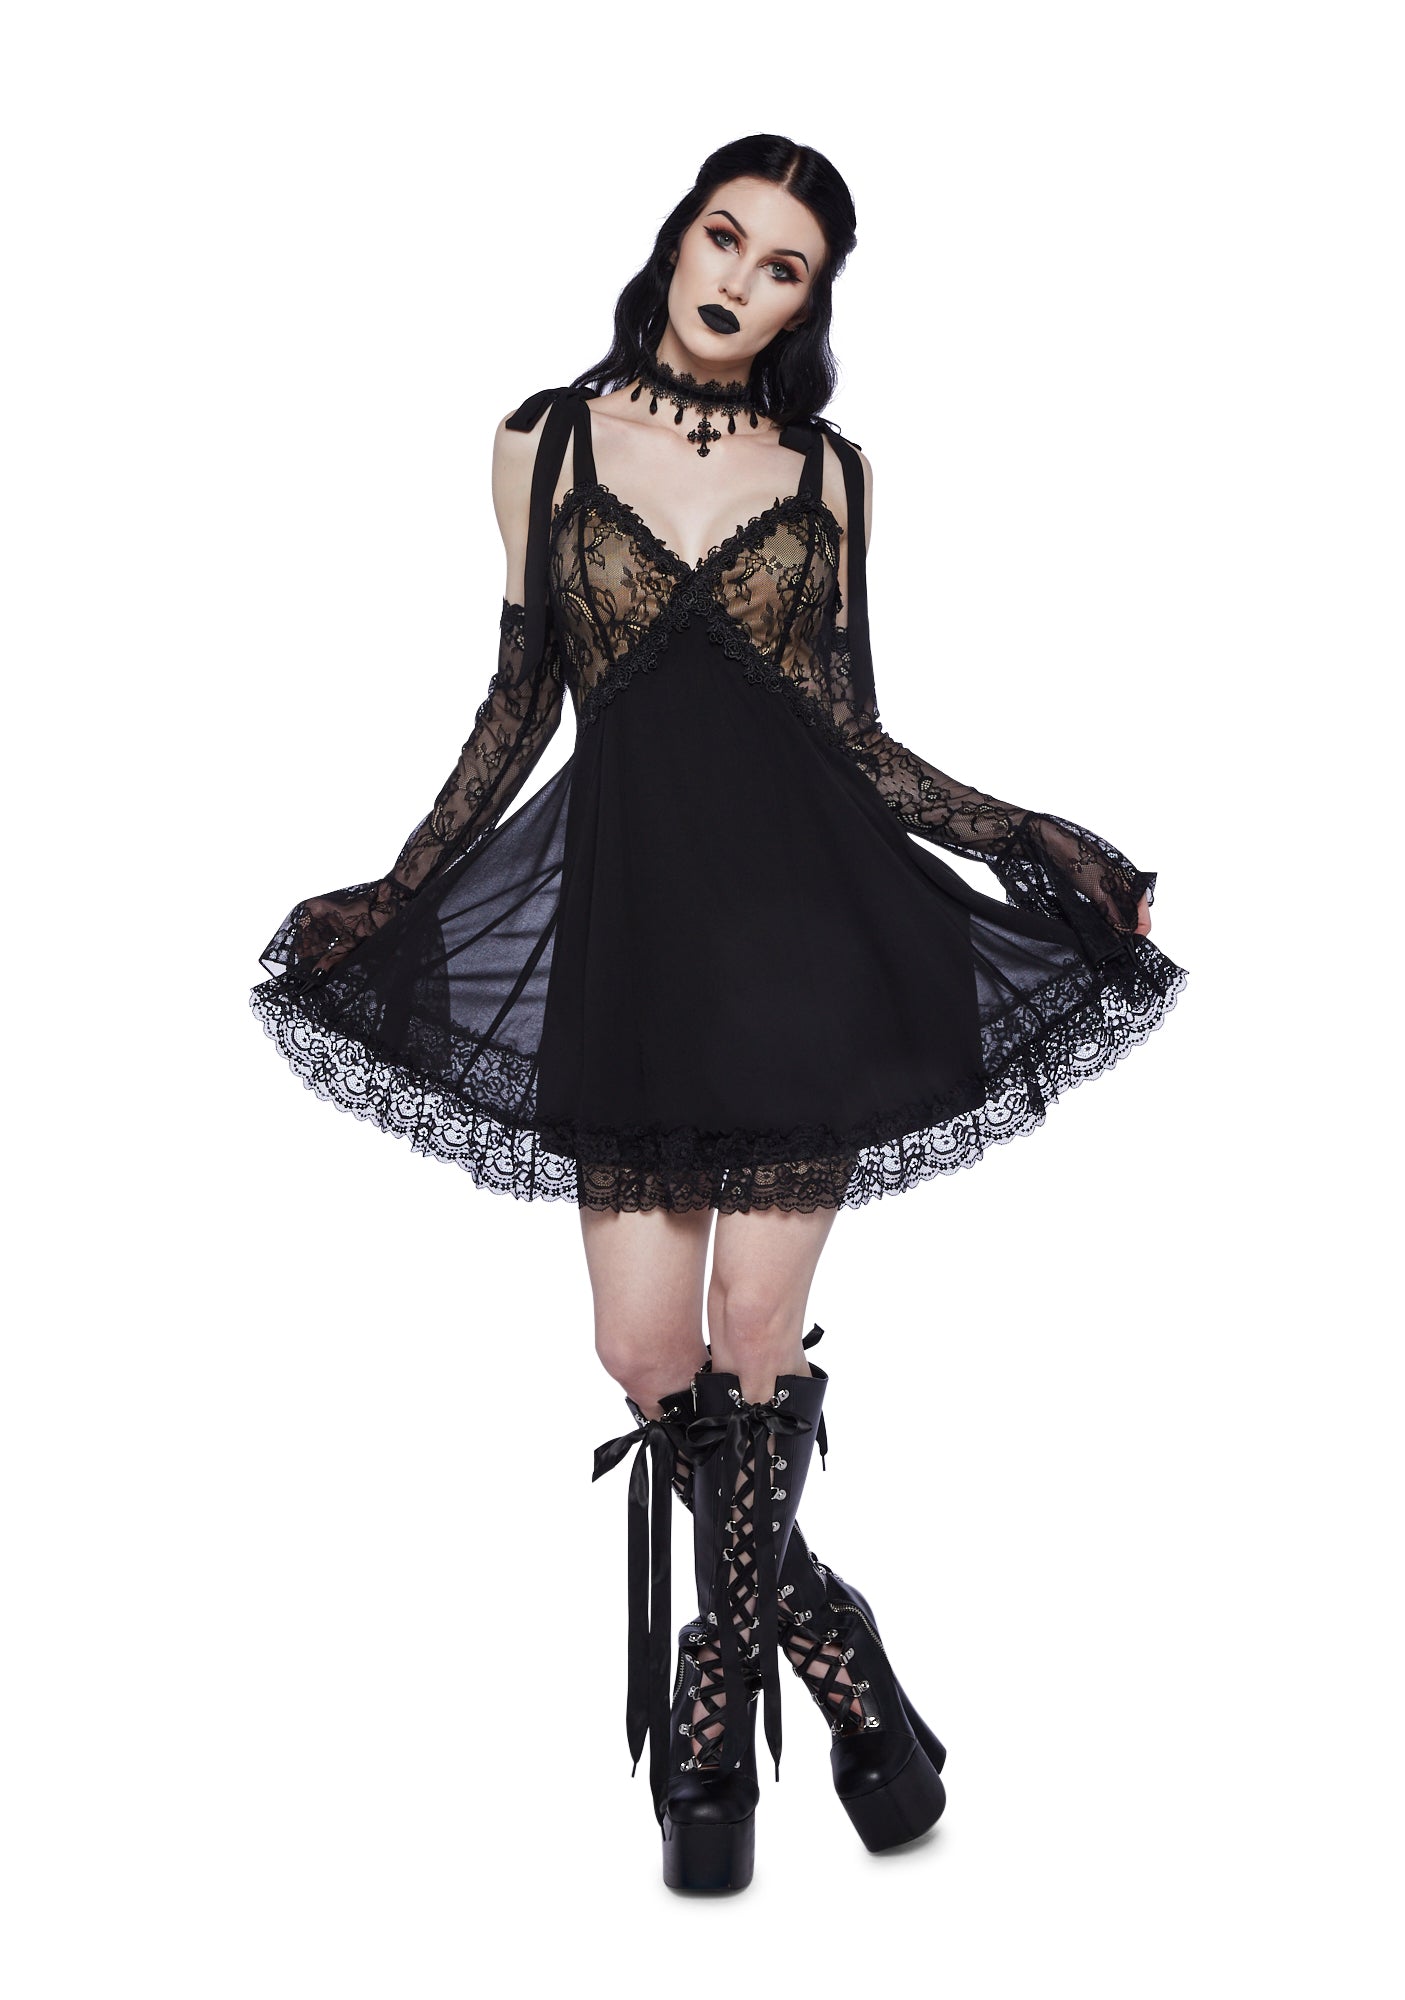 Widow Chiffon Lace – Black Kill Dolls Mini Dress